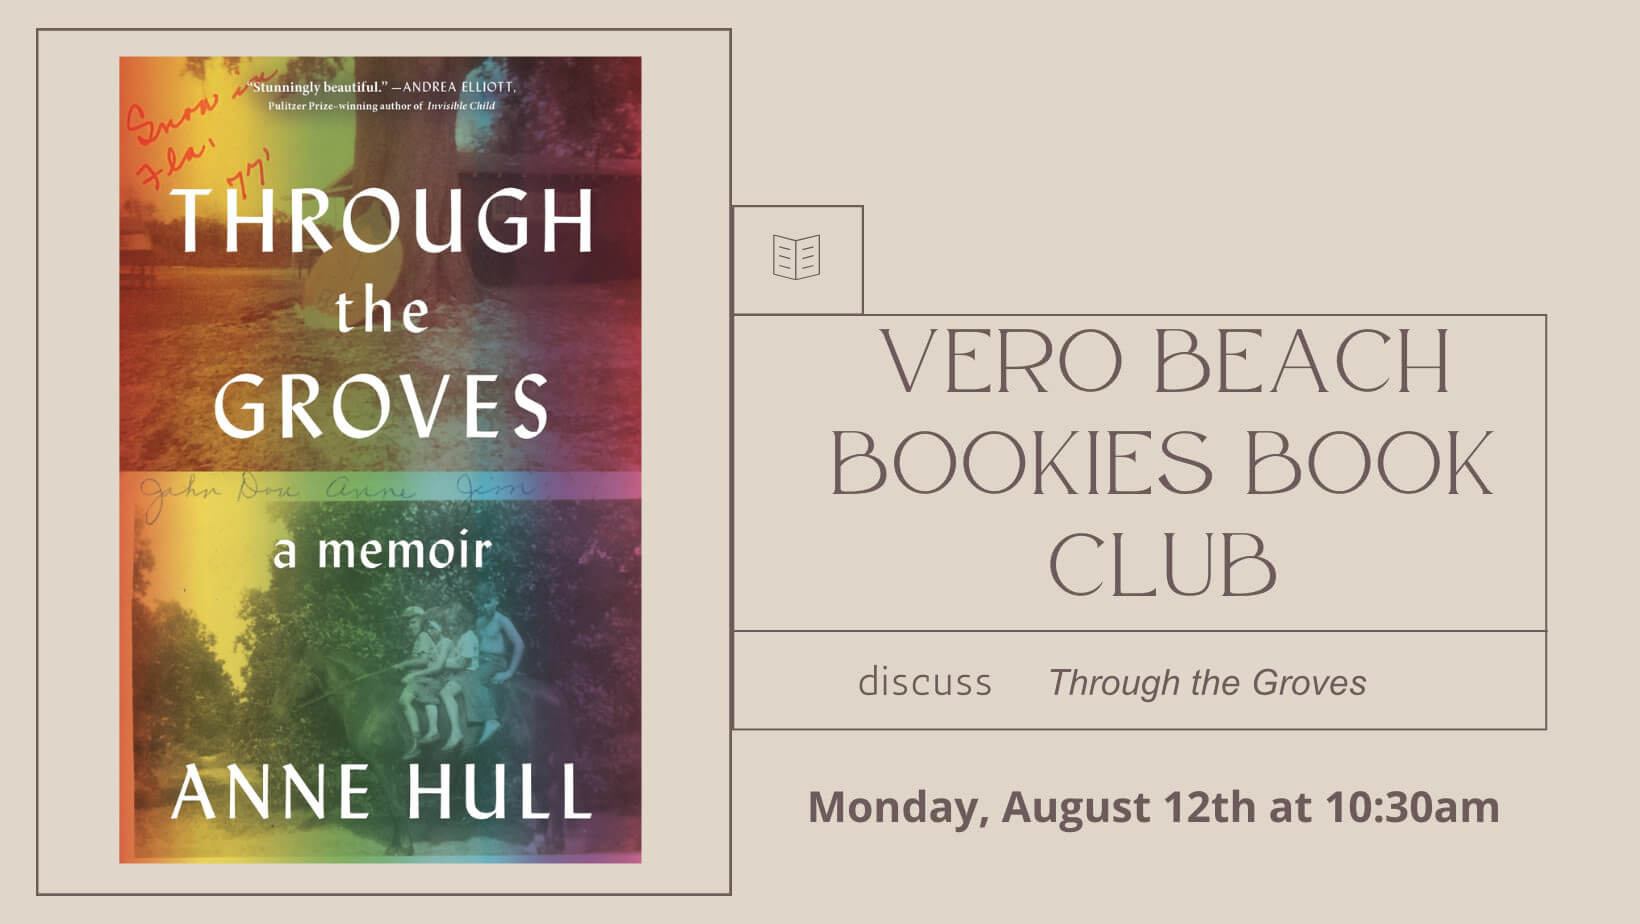 Vero Beach book club discusses Through the Grove